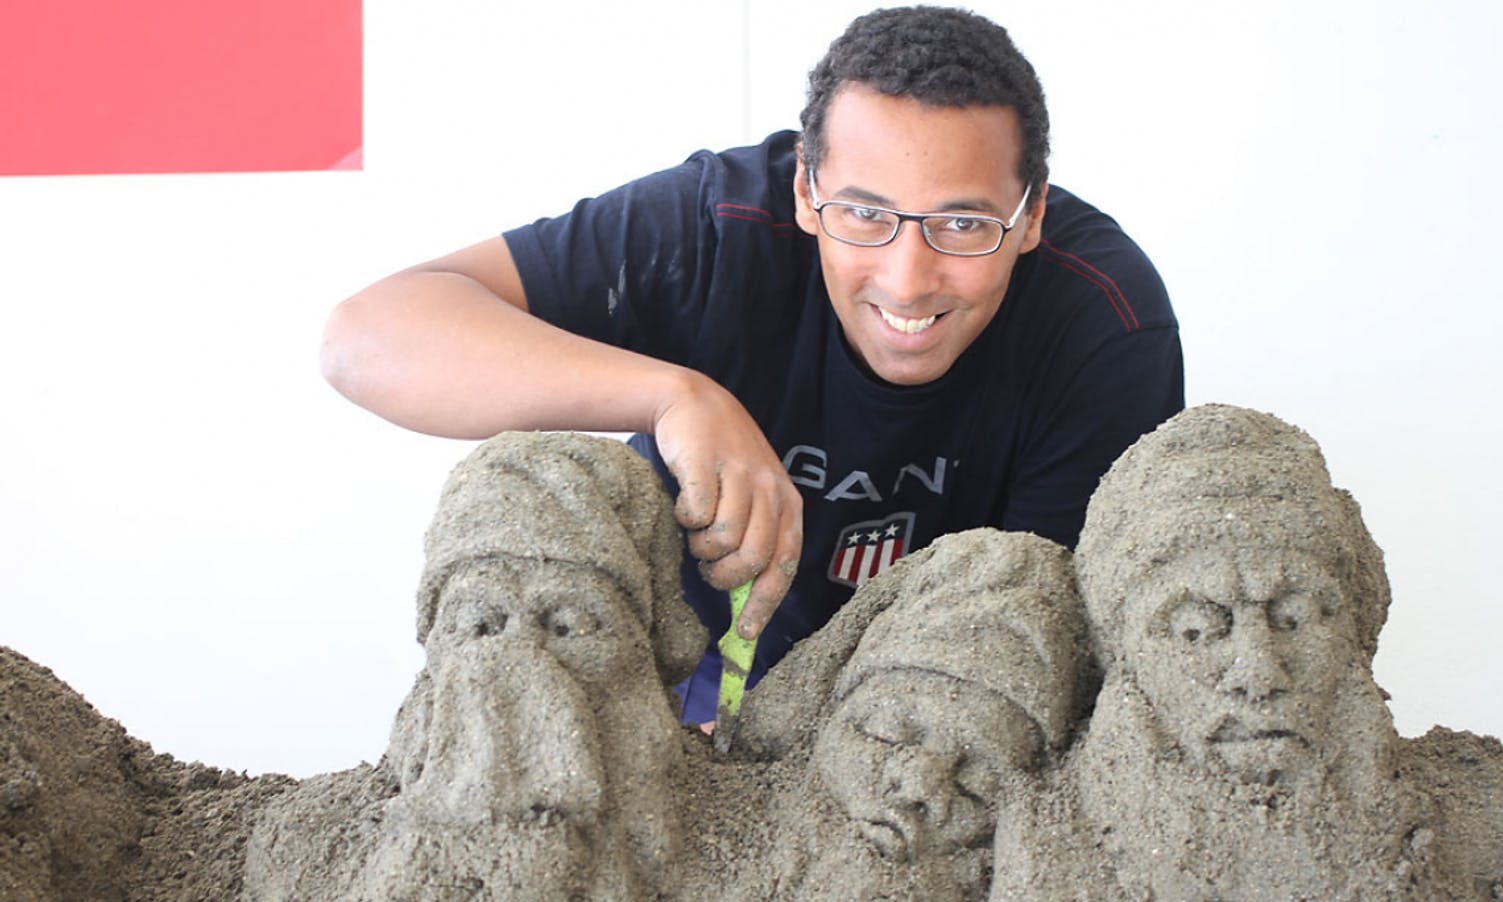 Bygger kunst av sand